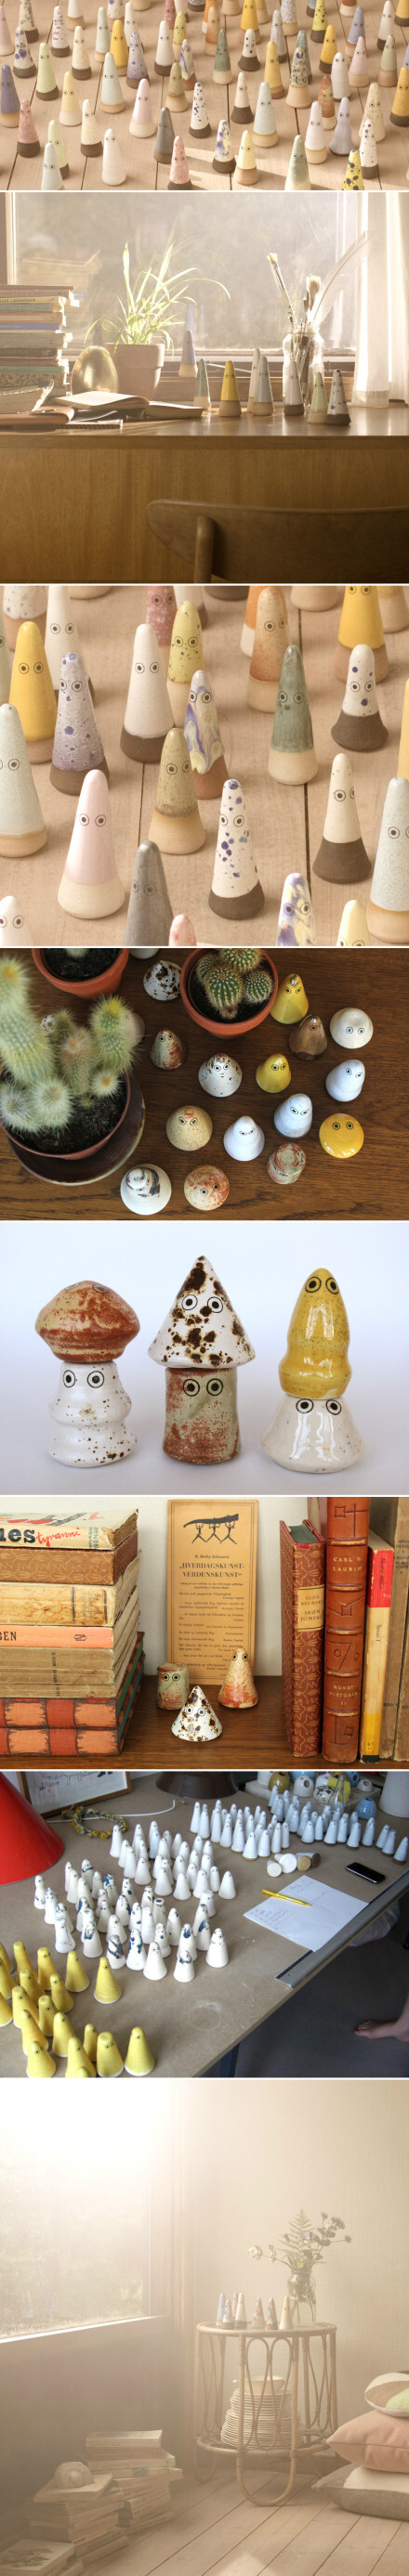 日本神话中有很多小精灵形象，丹麦设计师Anders Arhoj以此为原型，设计了这些陶瓷小精灵，让它们自由地霸占人类的生活空间。很温馨的想法，也很可爱的设计。这些小精灵都是手作陶器，经过手工上釉与低焙烧窑等工序每一个都是独一无二的。